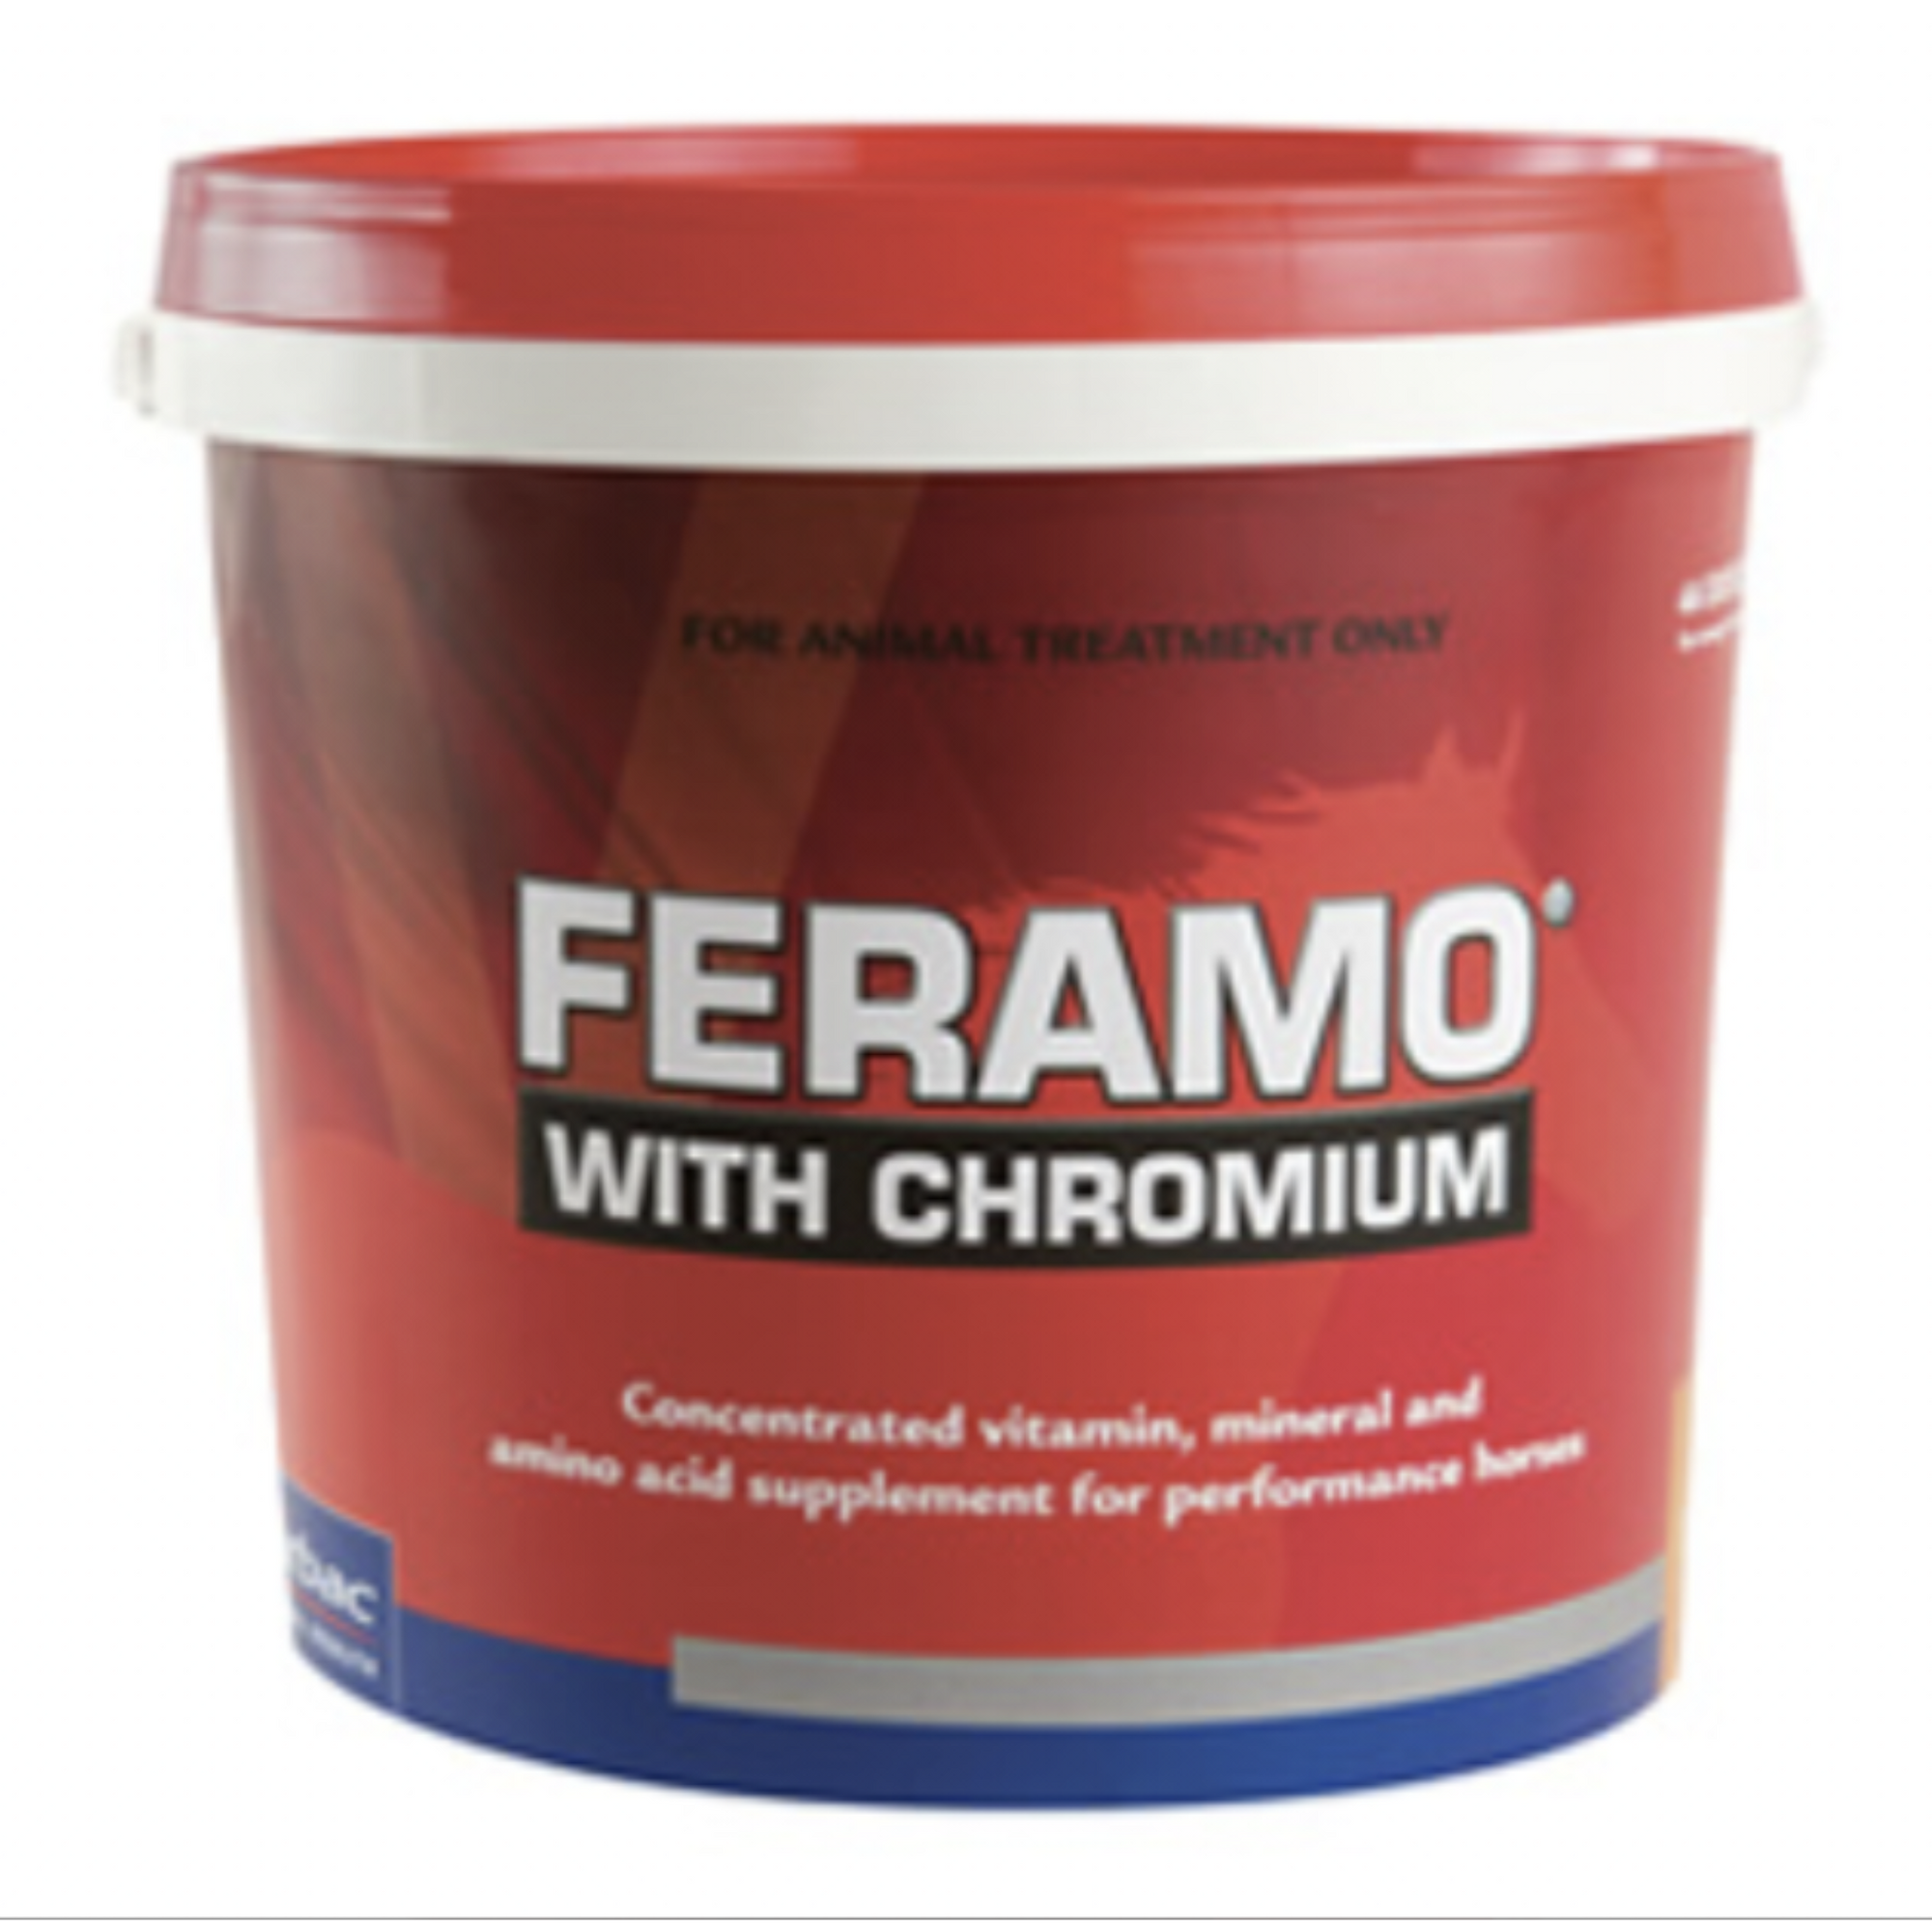 Virbac Feramo with Chromium